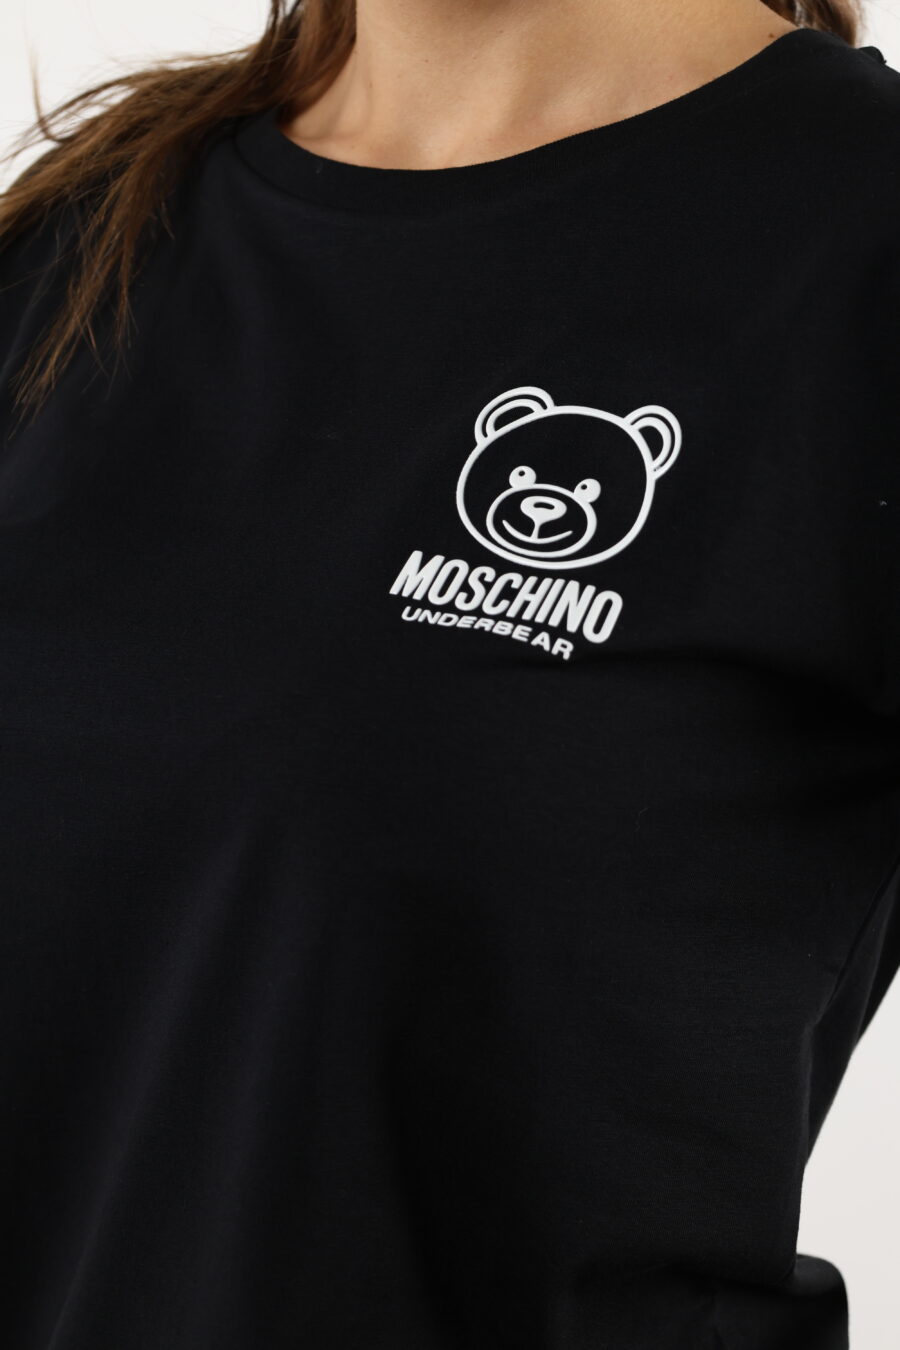 T-shirt preta com minilogo de urso branco - 110528